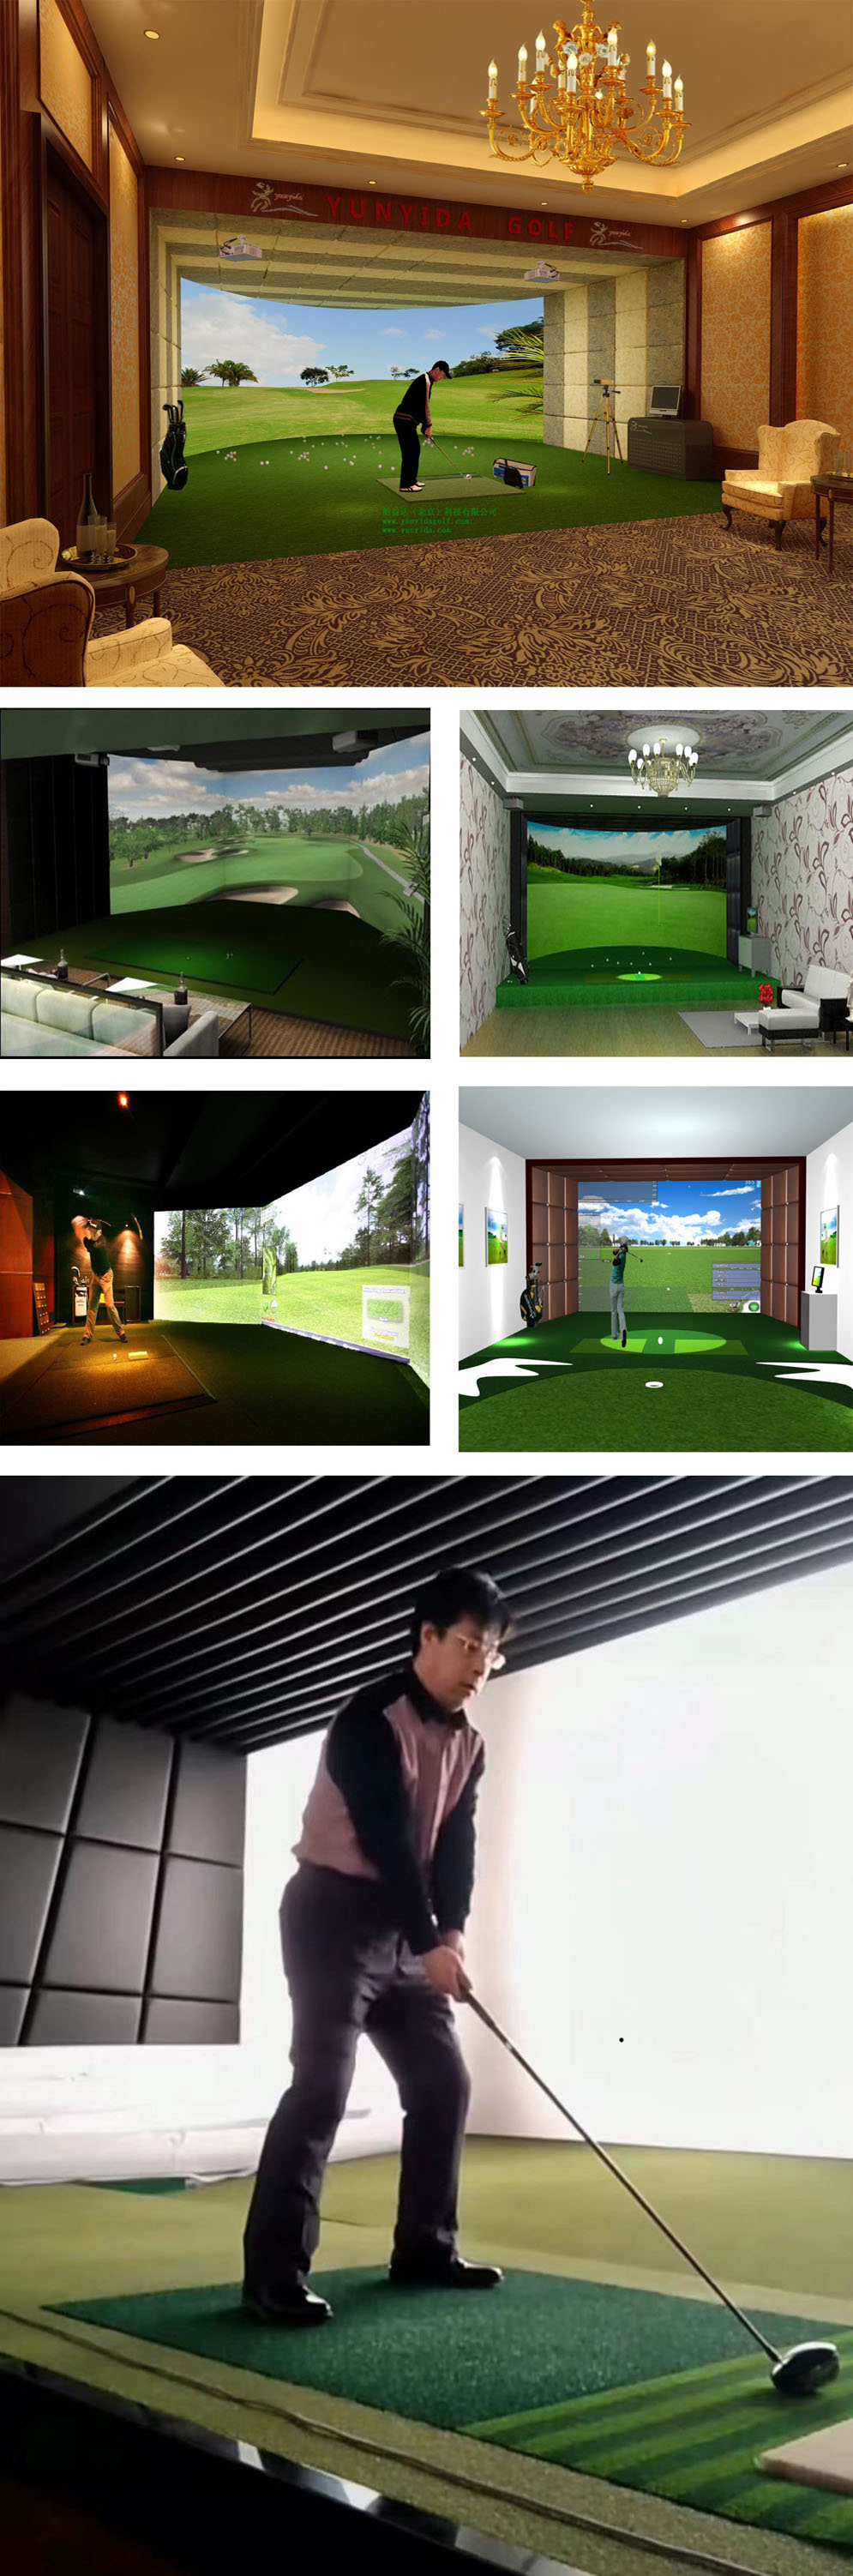 室内高尔夫项目案例 三.jpg